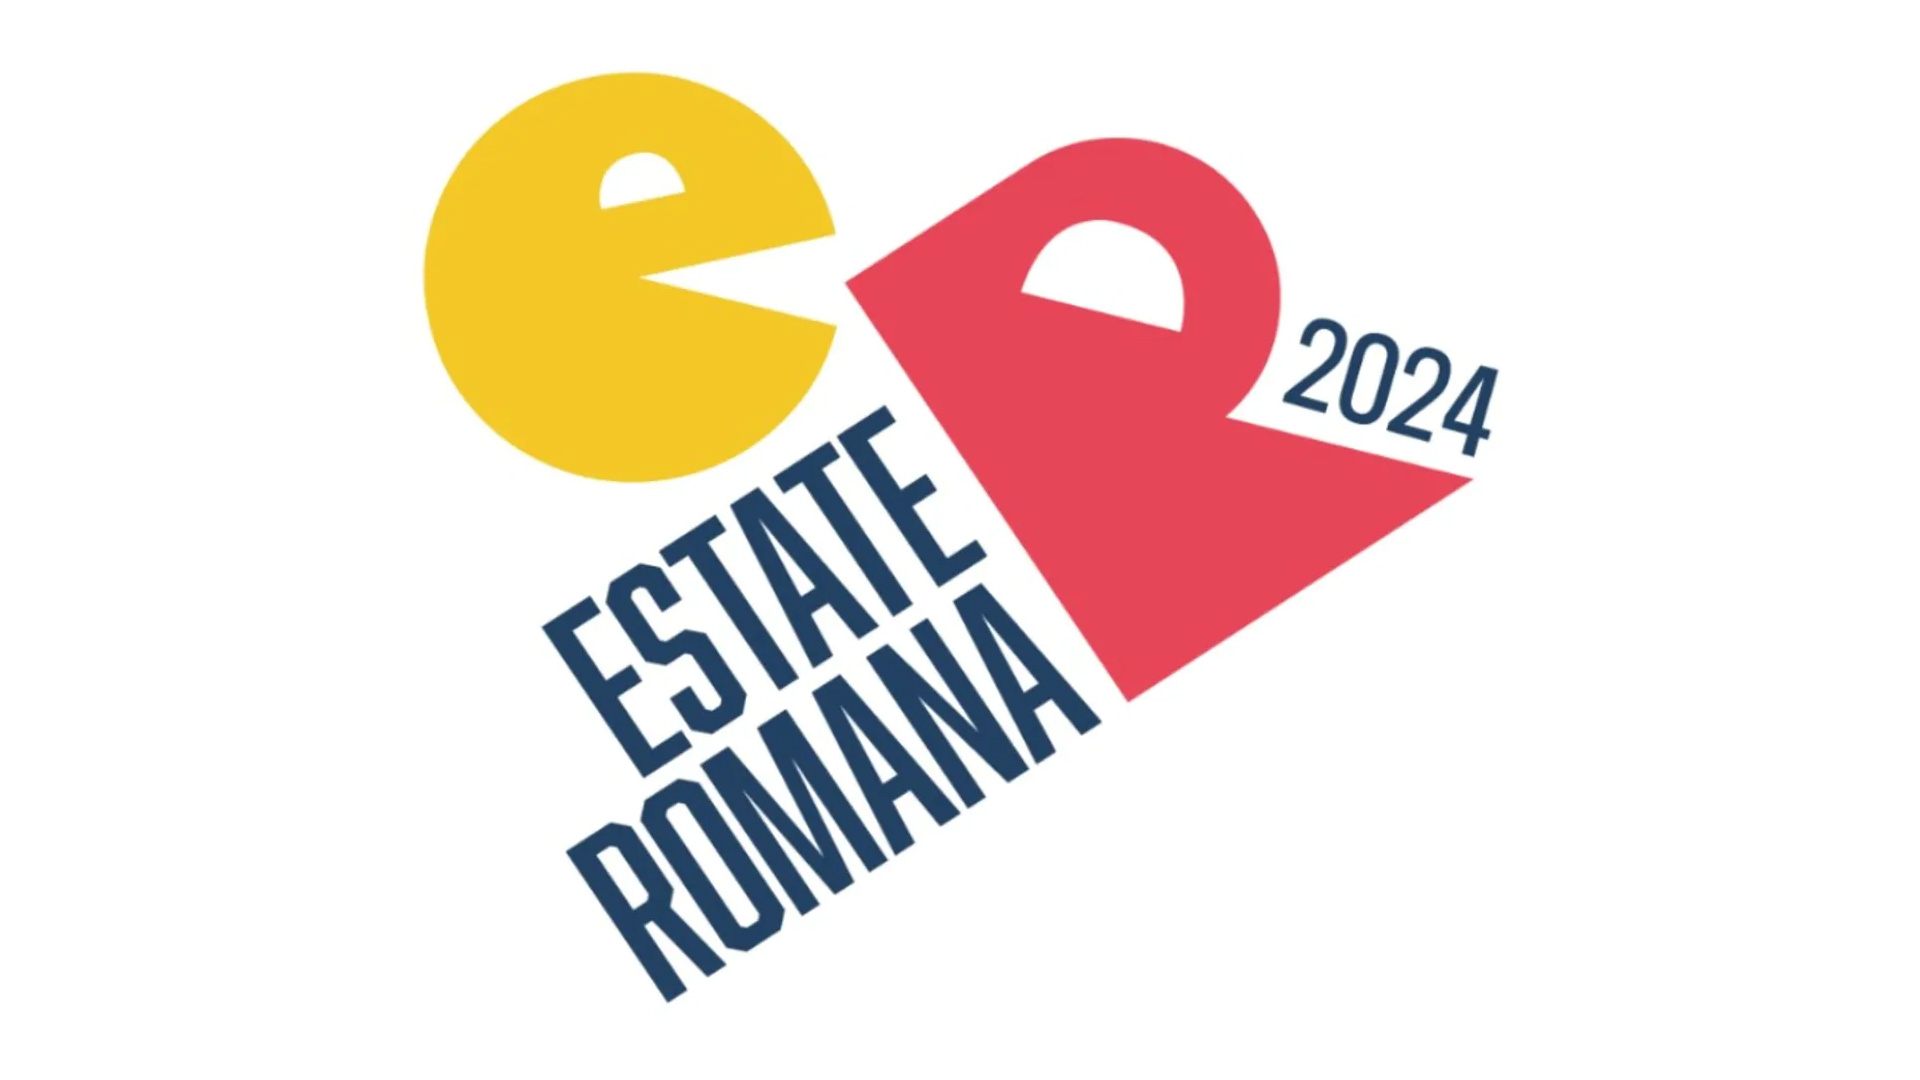 Logo dell’Estate Romana 2024: design colorato con simboli di Roma e il testo ‘Estate Romana 2024’